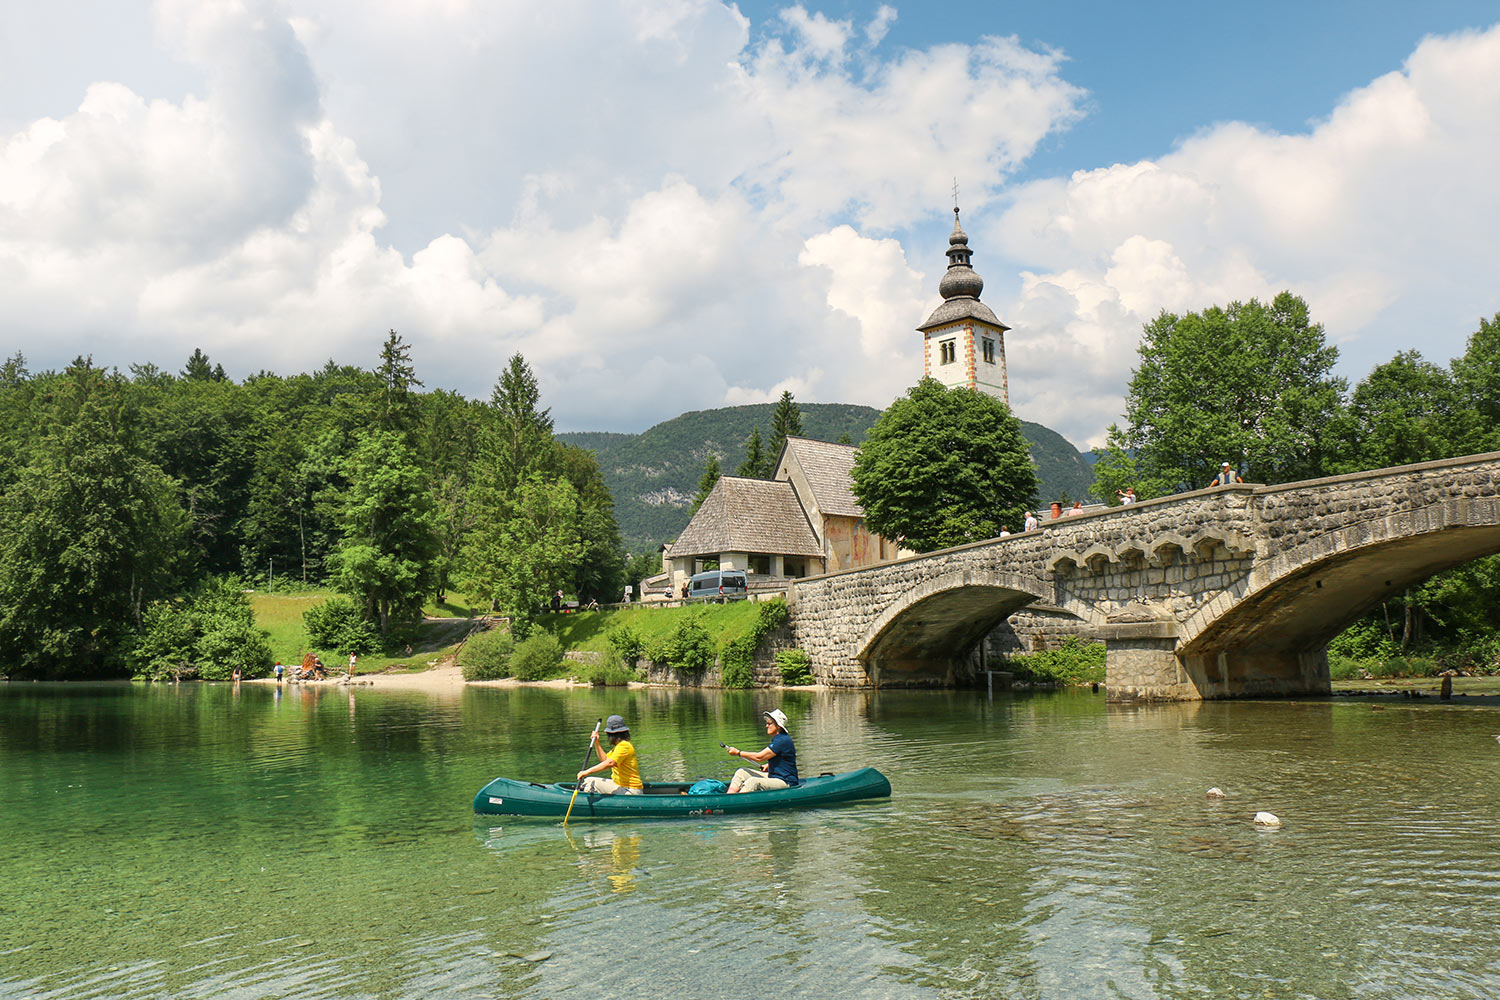 Bateau, Église, Lac Bohinj, Slovénie / Canoe, Church, Bohinj Lake, Slovenia